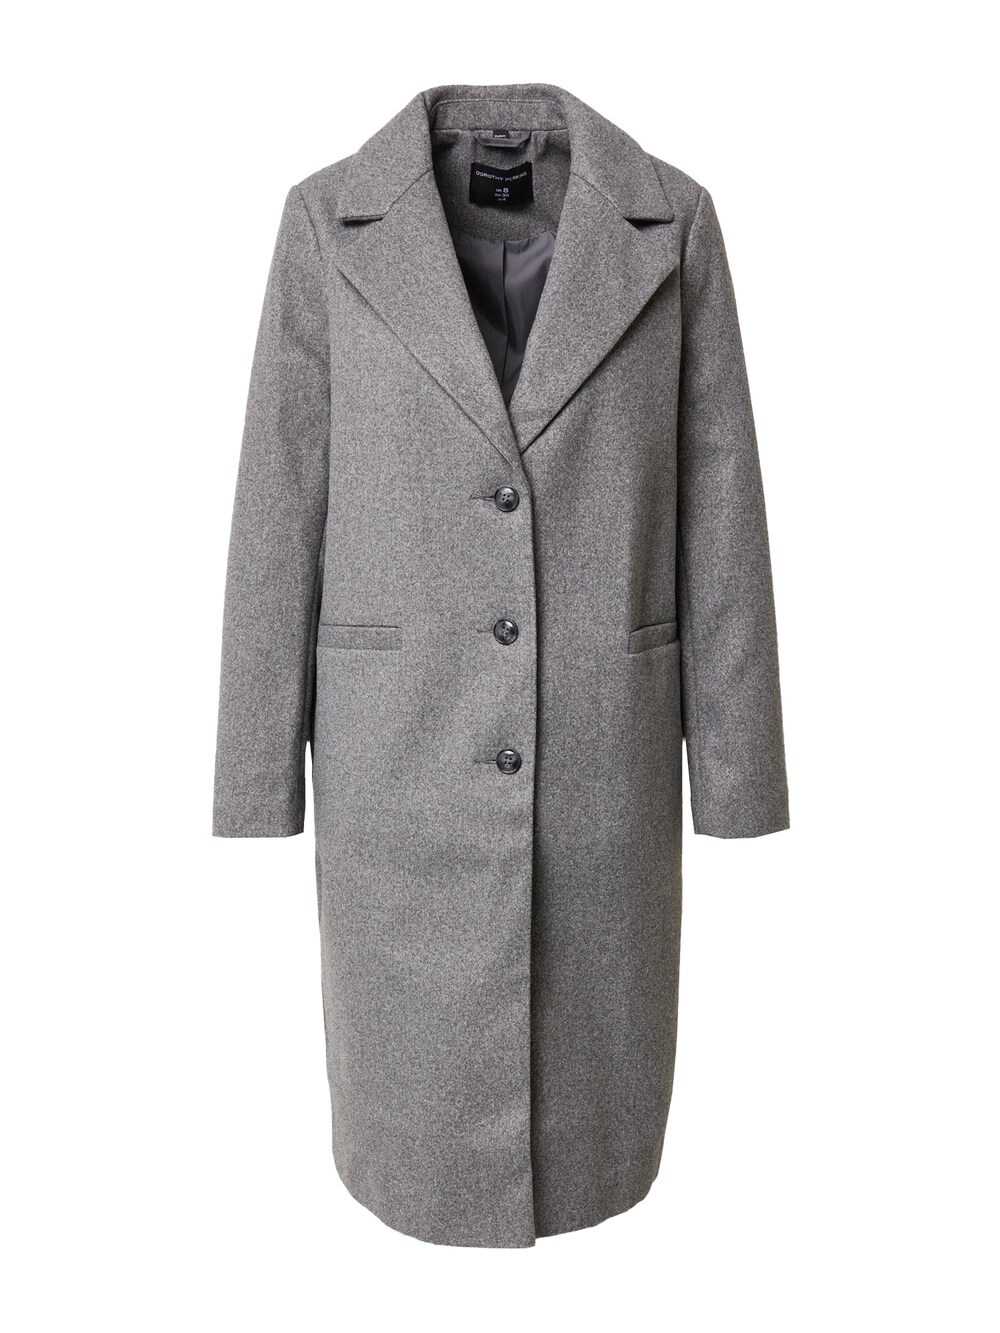 Межсезонное пальто Dorothy Perkins, серый